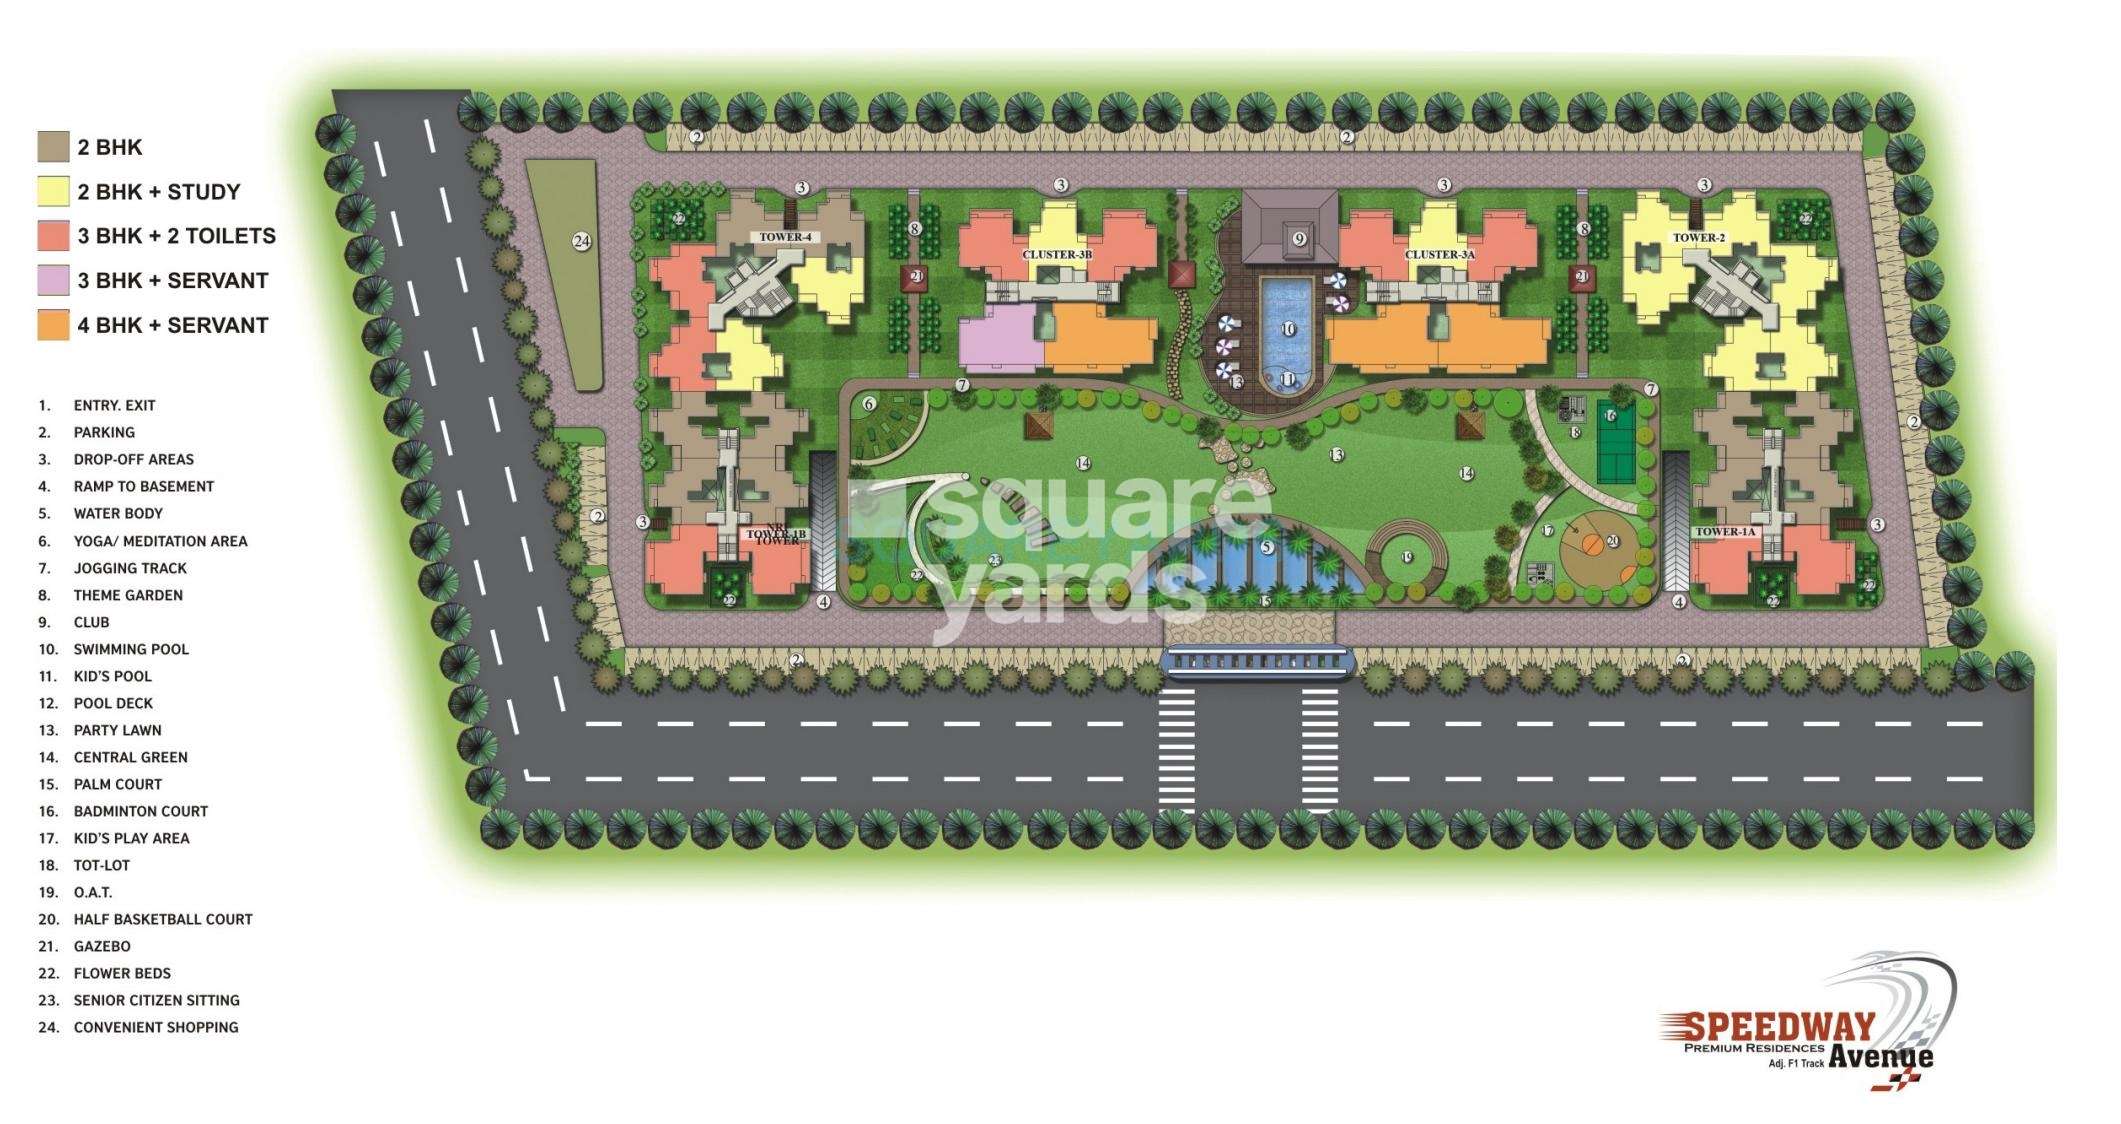 speedway avenue master plan image1